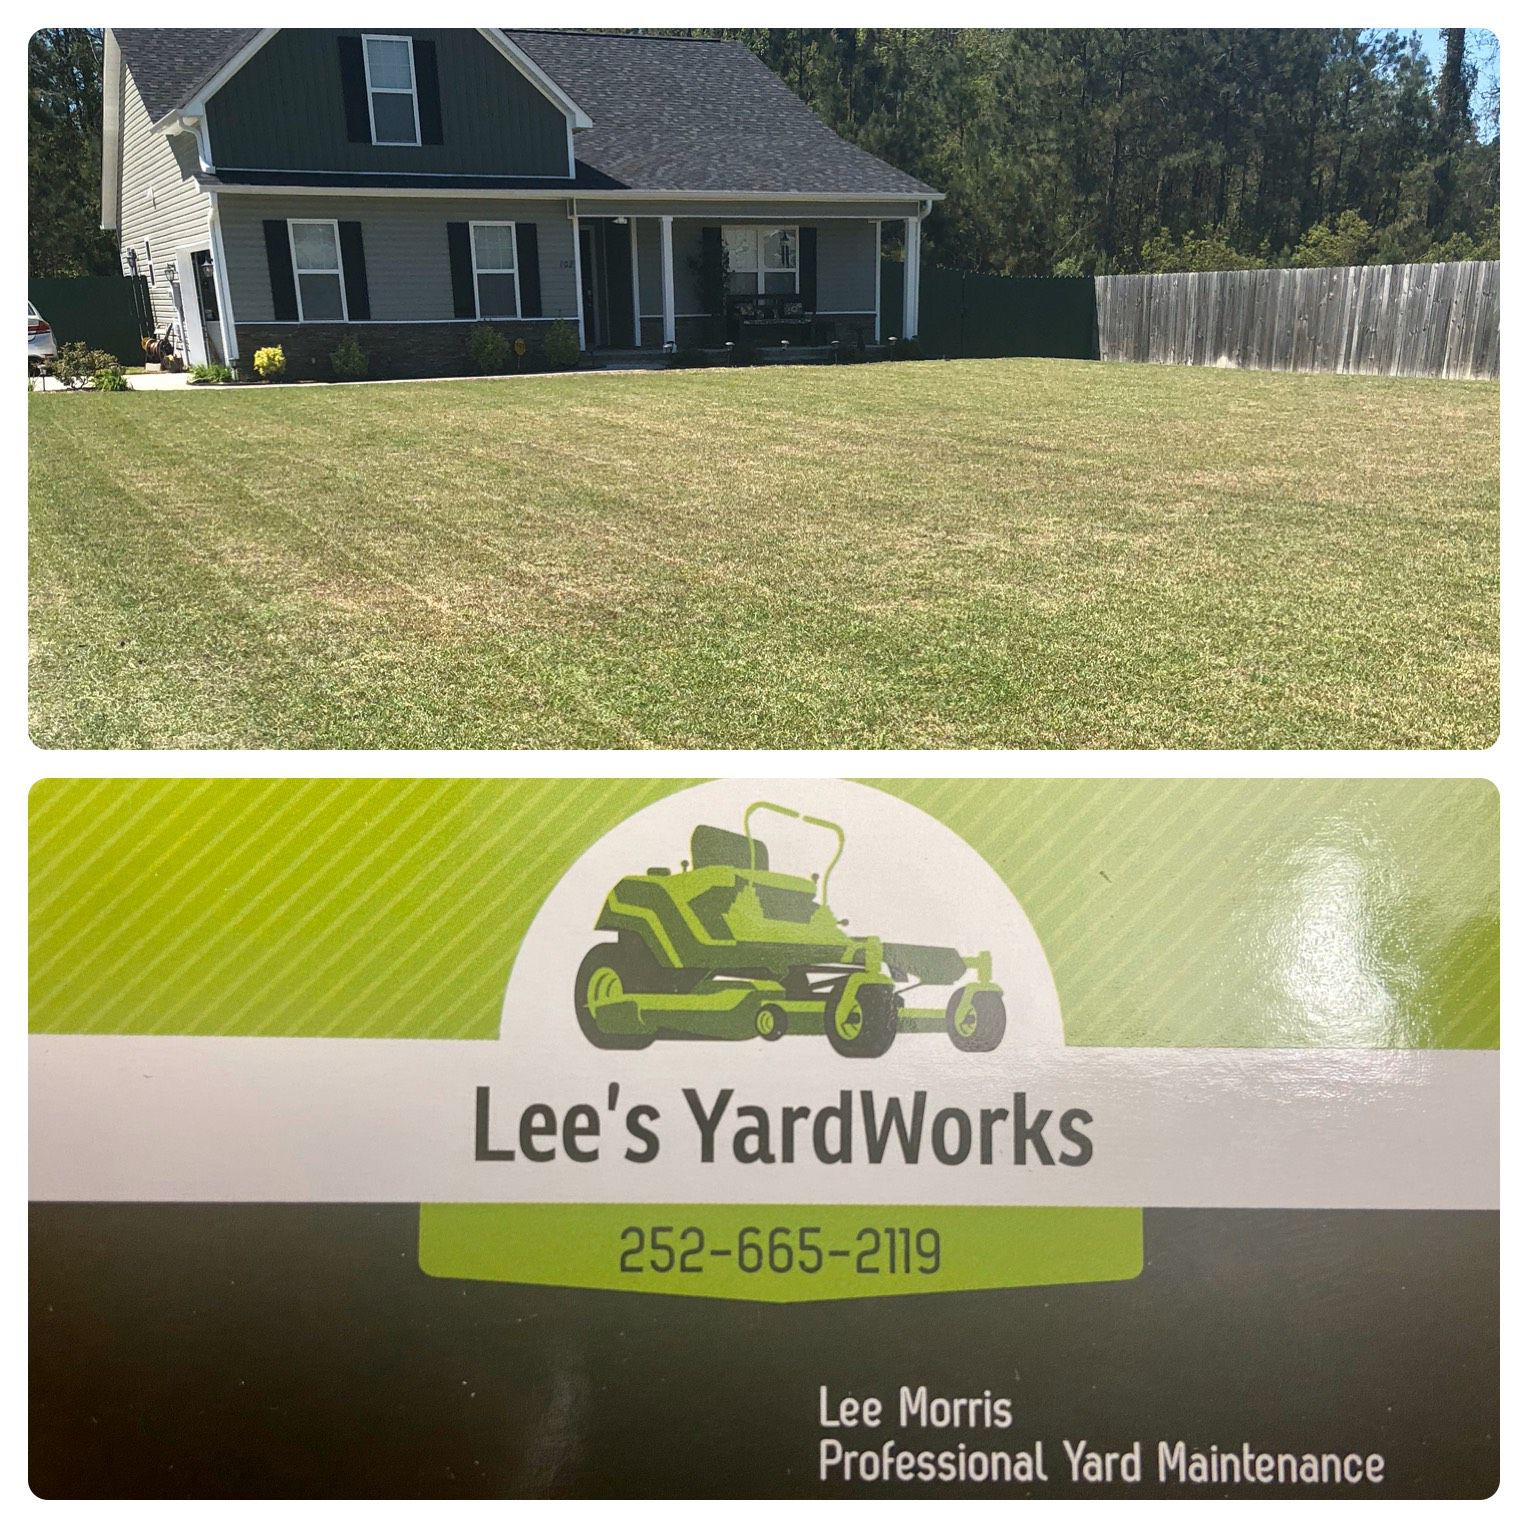 Lee’s Yardworks